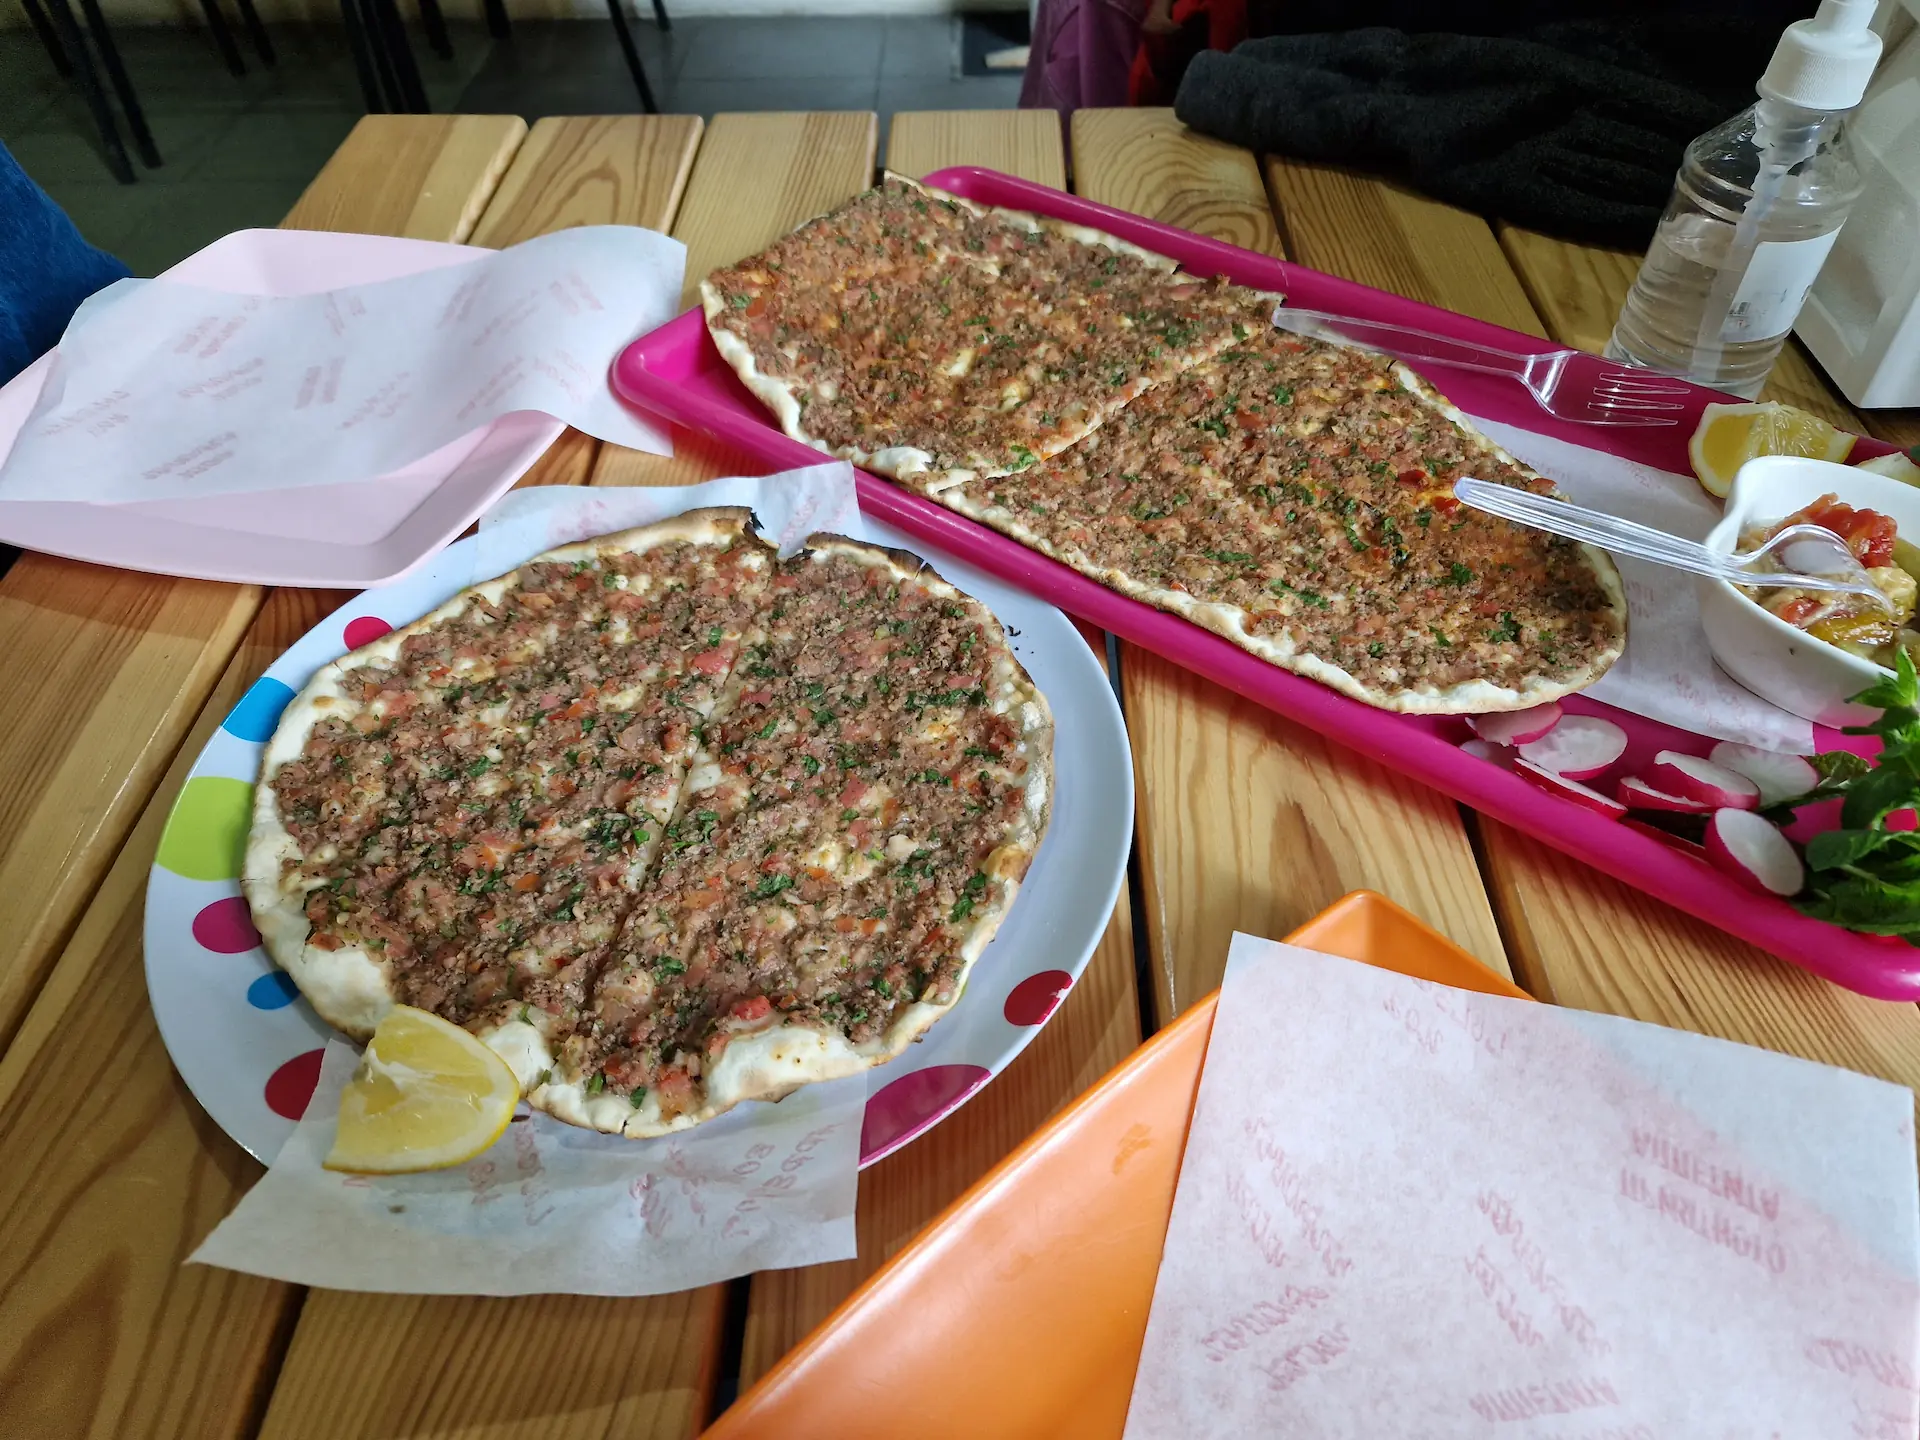 Sorte de pizza arménienne, viande et épices sur le dessus, un citron sur le côté